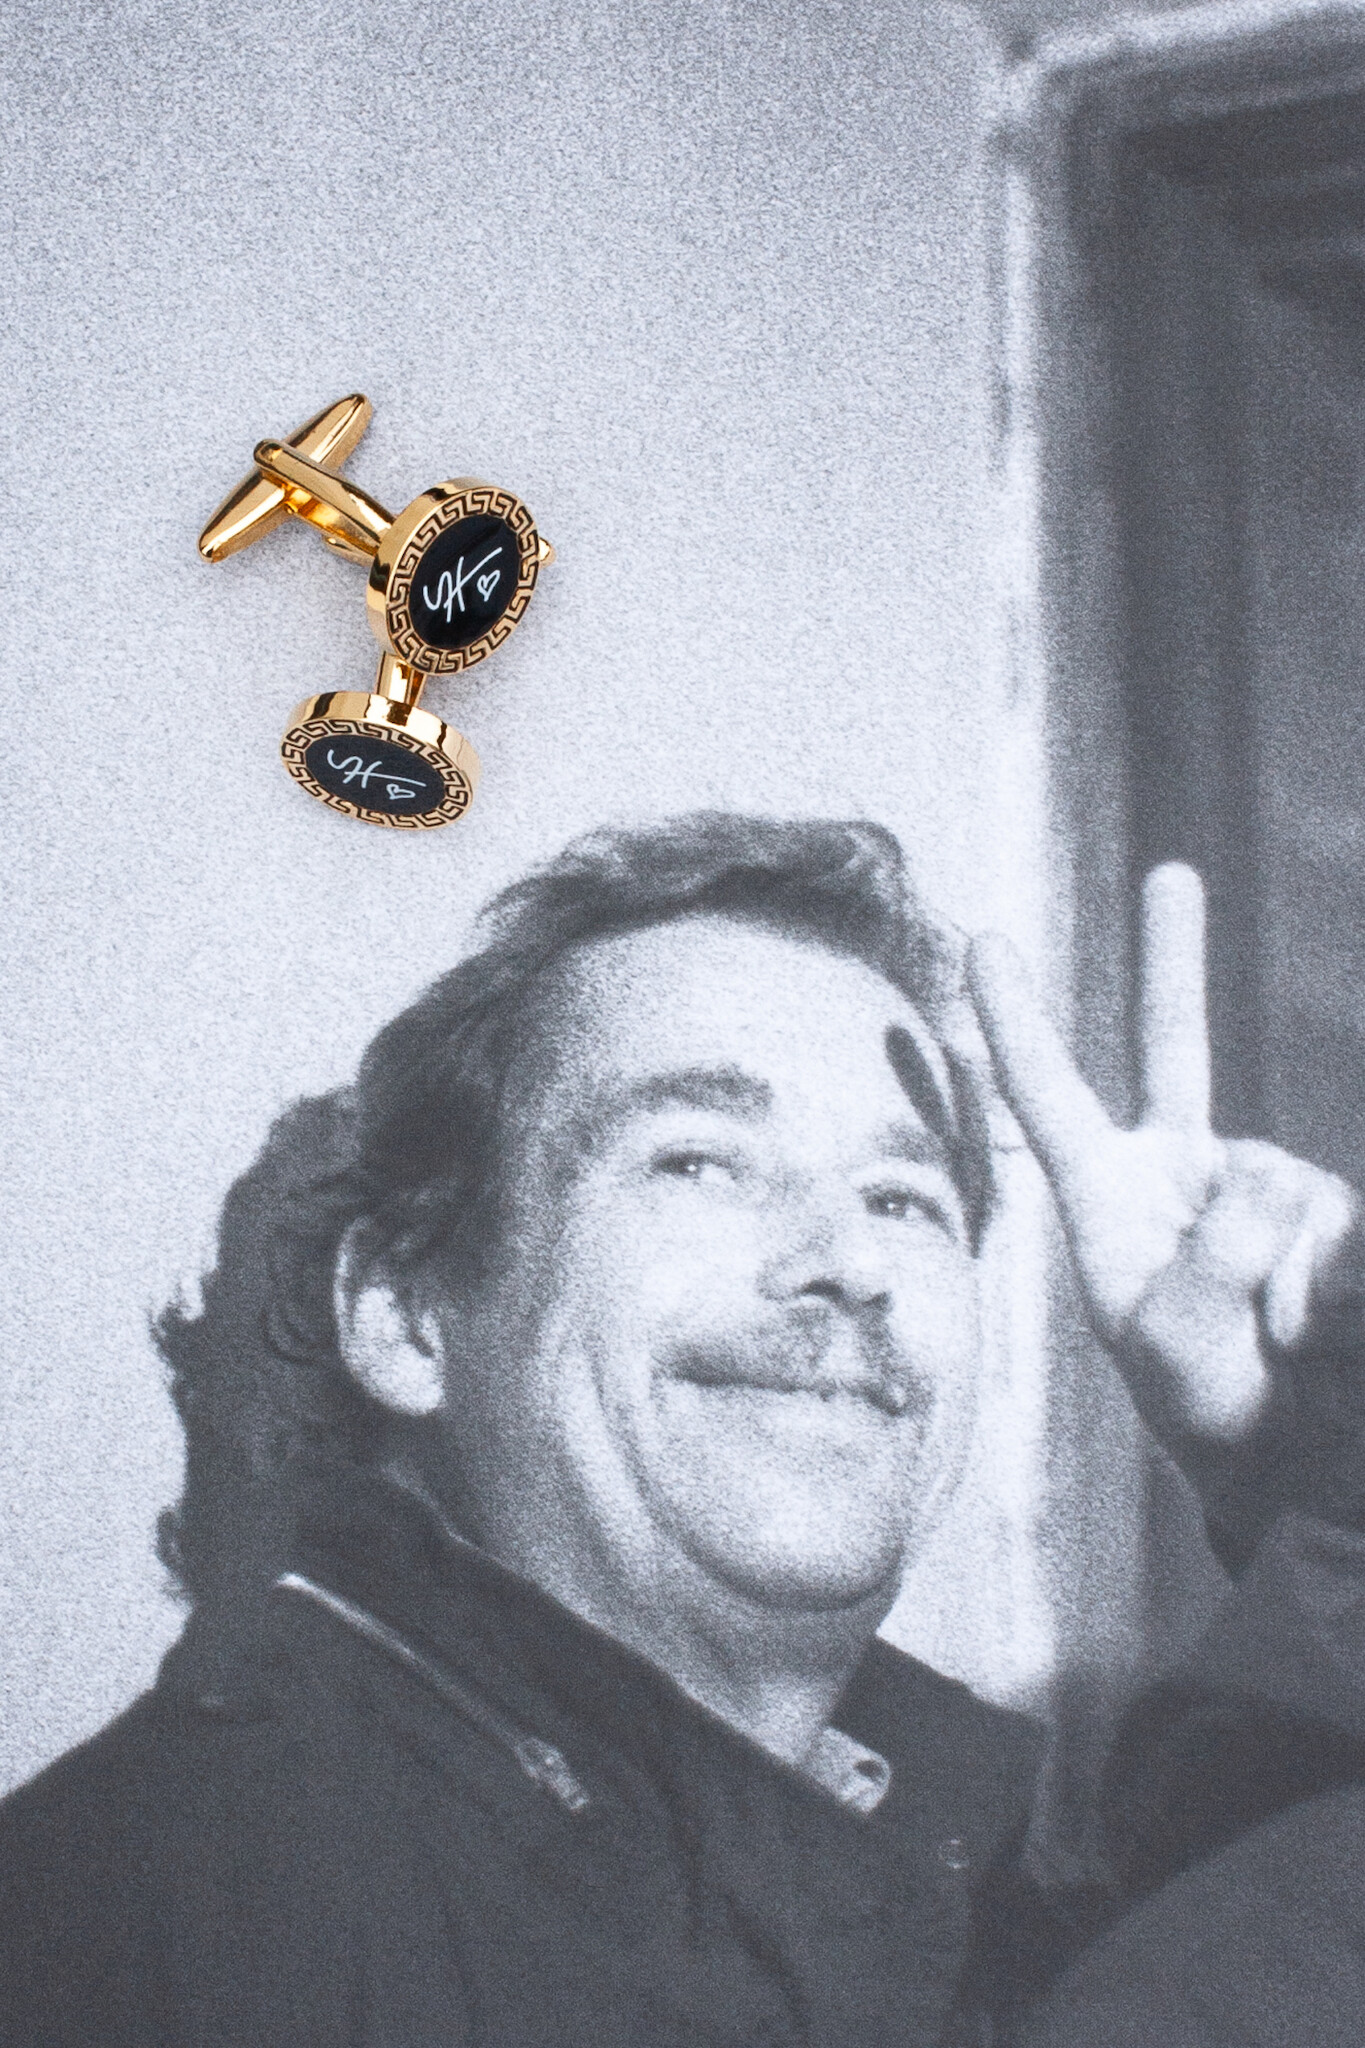 Knoflíčky Camisia I. Václav Havel - Prezidentská kolekce